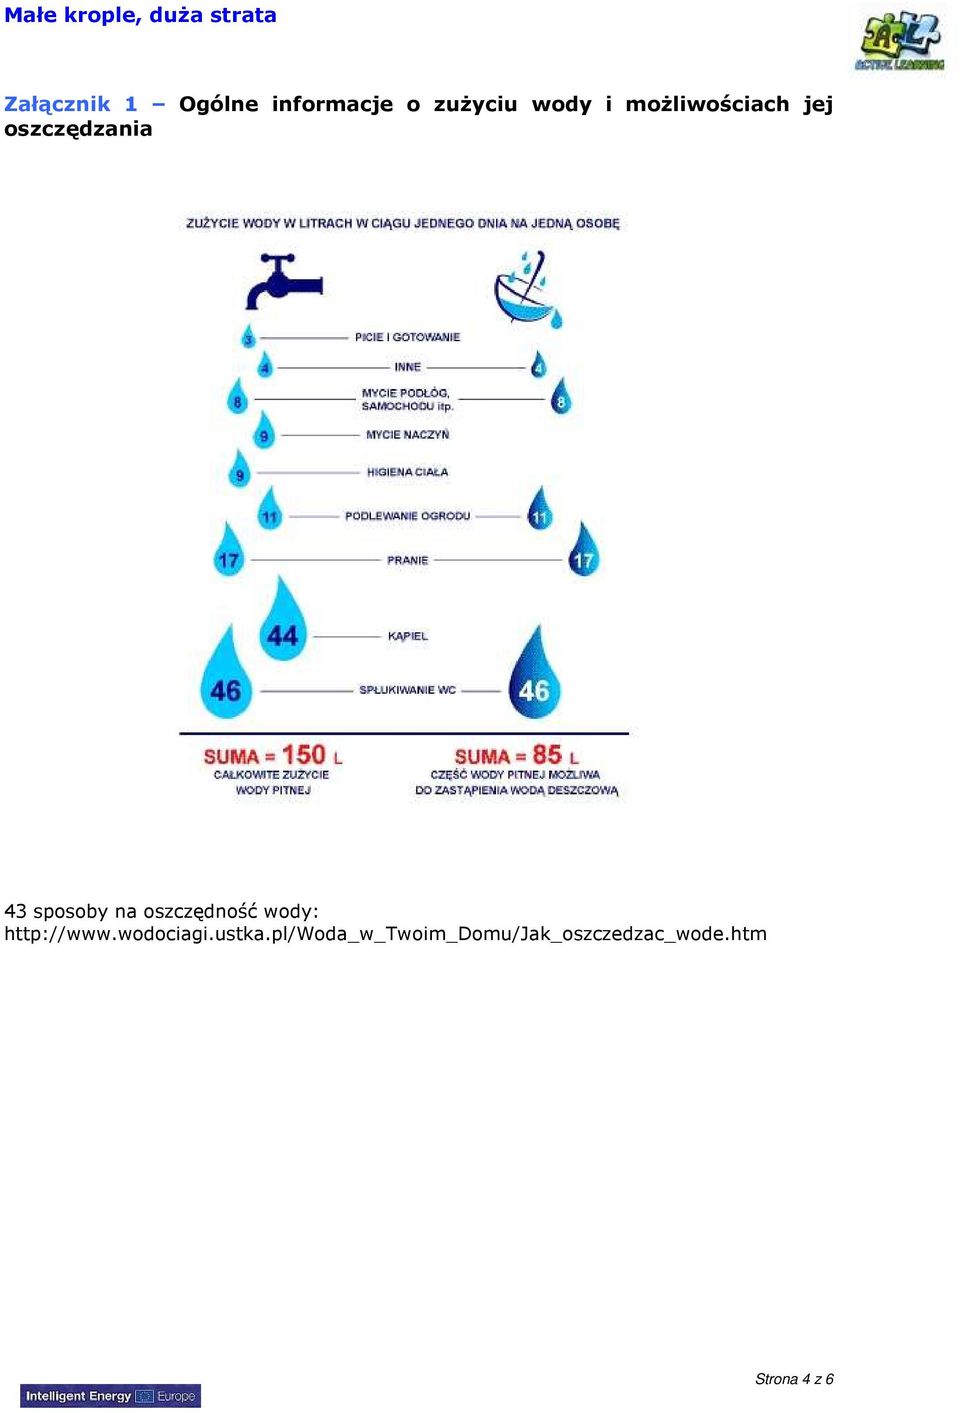 sposoby na oszczędność wody: http://www.wodociagi.